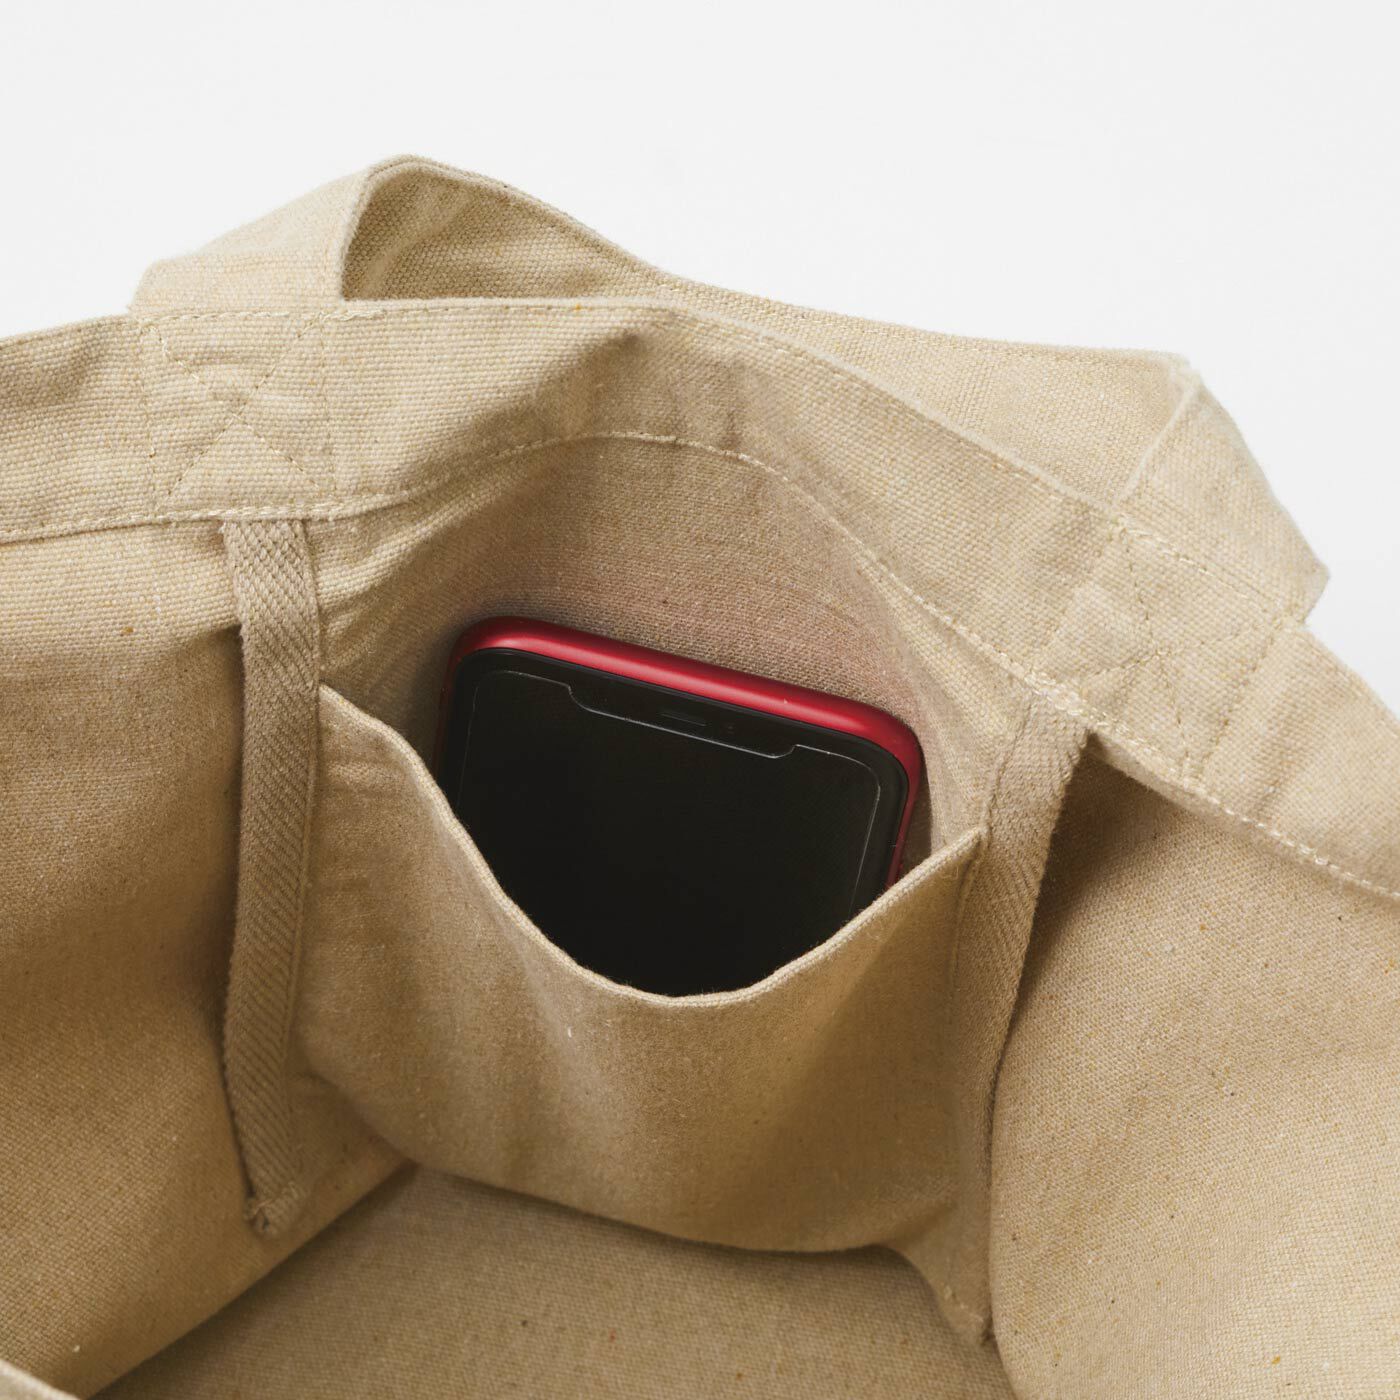 Real Stock|リサイクルコットンを使った　手持ちも肩掛けもできる大きなバッグ|仕切りポケットの中には、スマホにぴったりな小さめ内ポケットも。